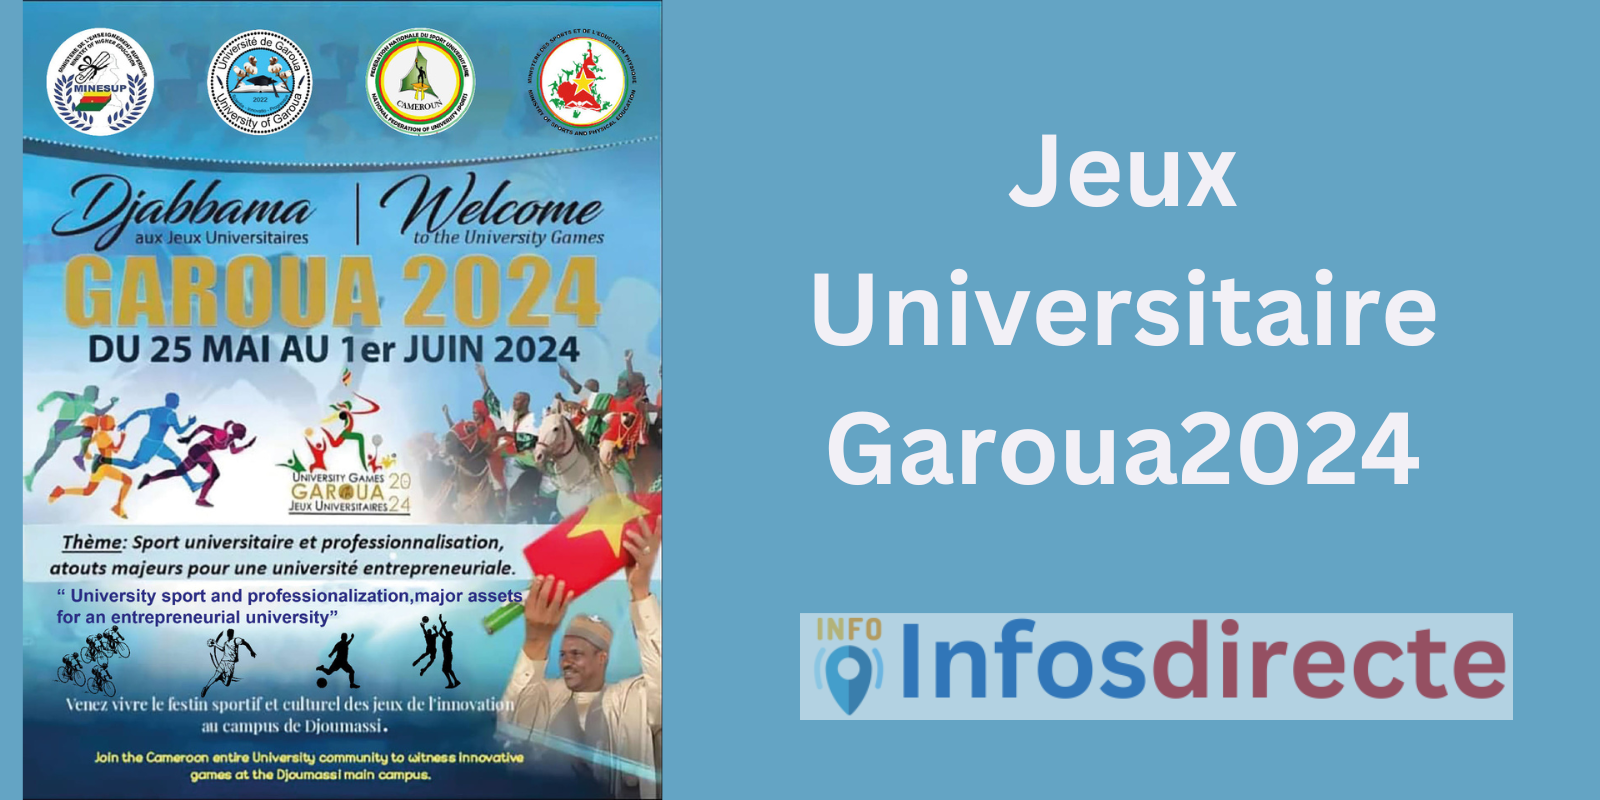 Jeux Universitaire Garoua2024